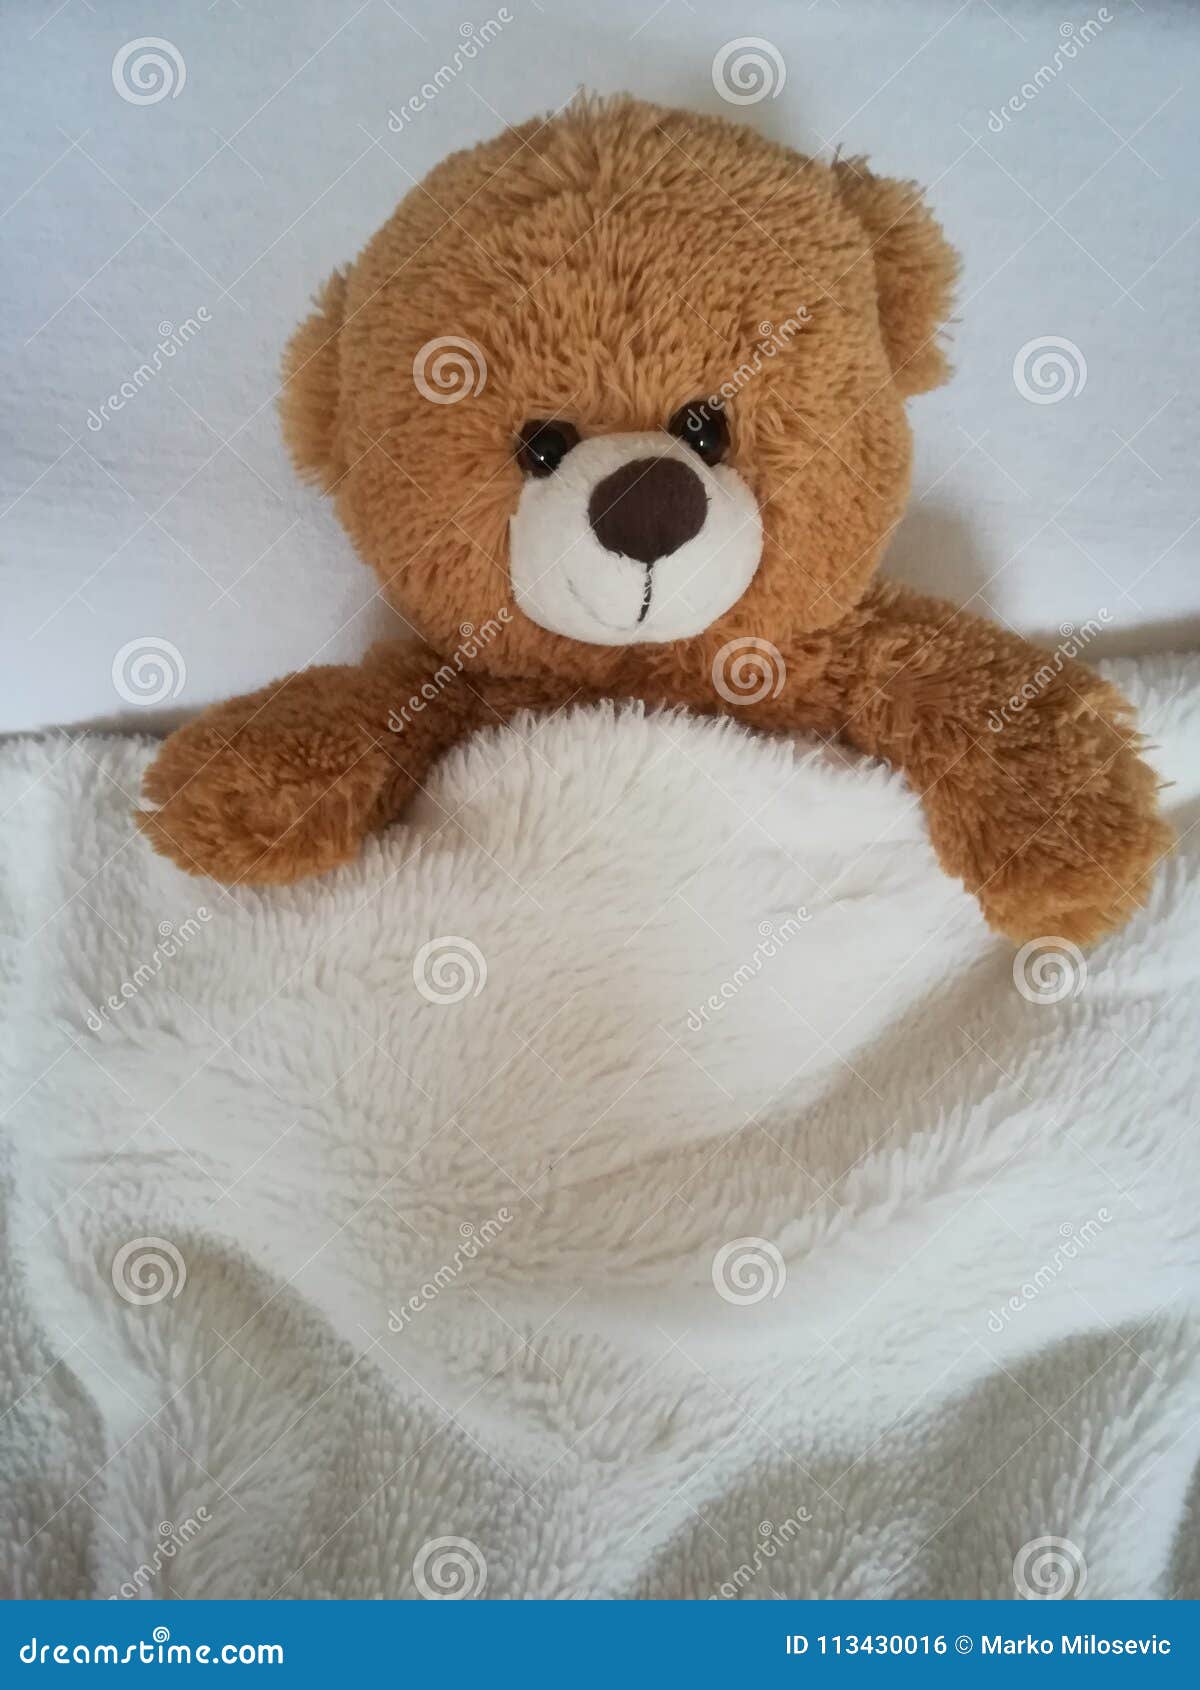 teddy bear on bed.